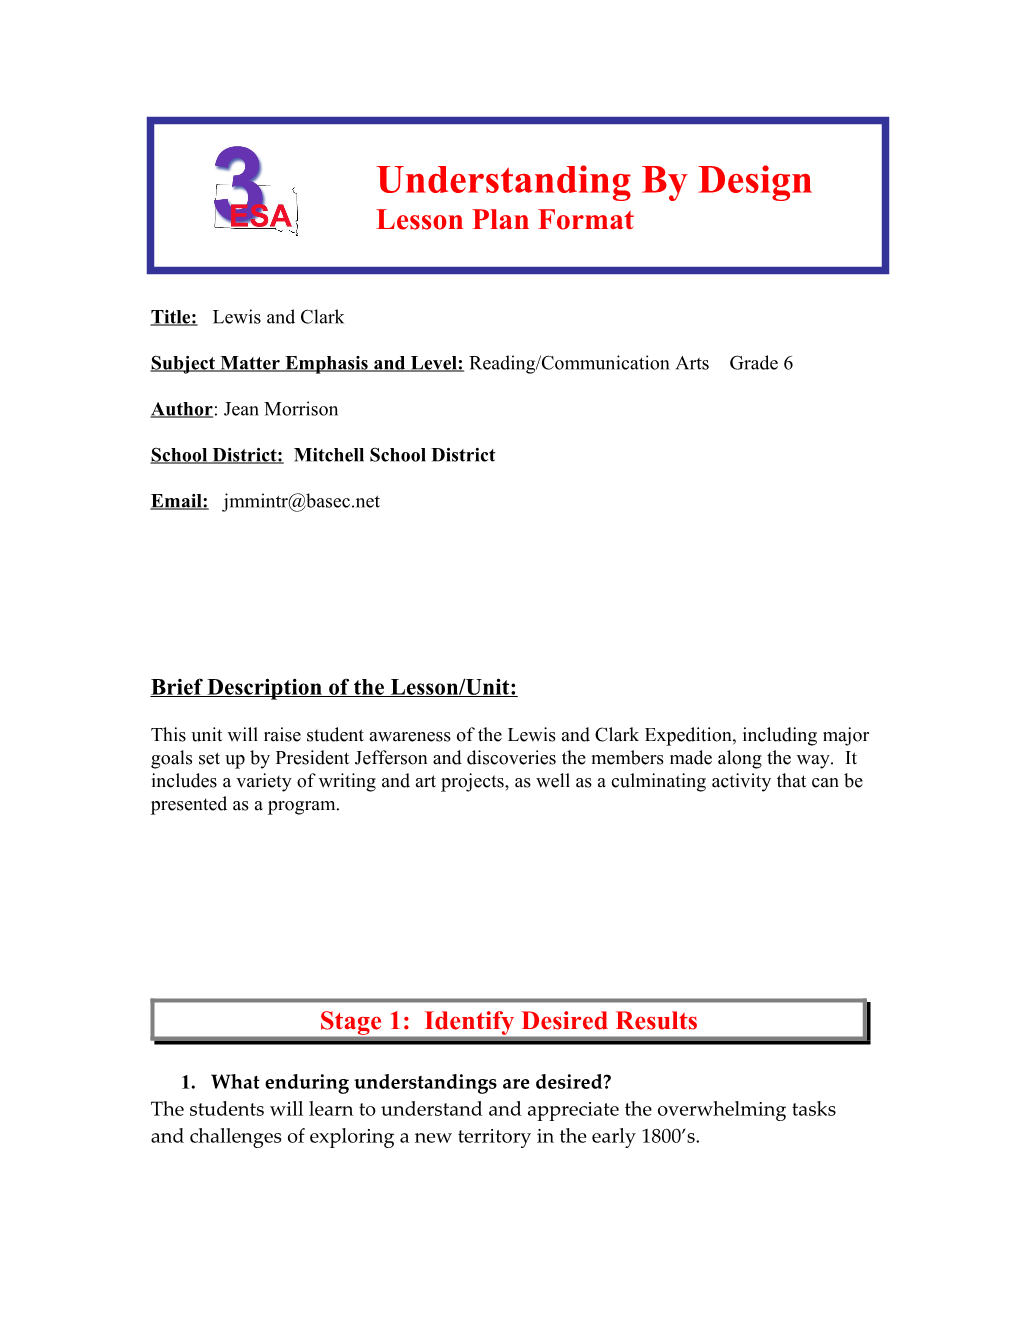 Understanding by Design s1